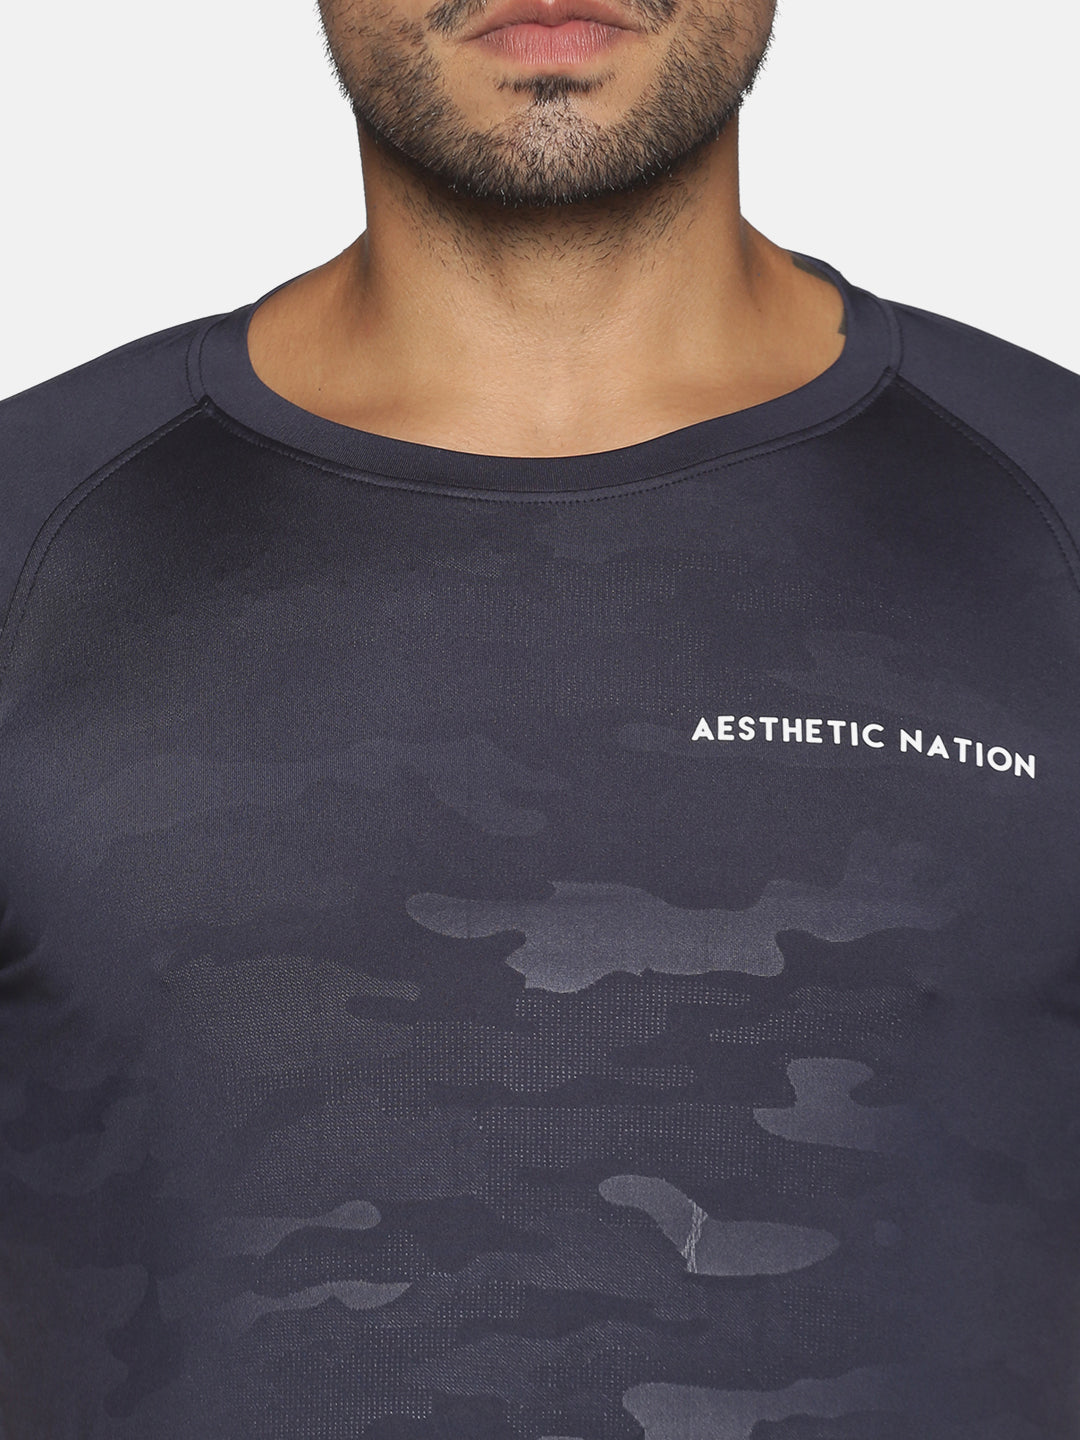 Apex Camo Tshirt T-shirt - AestheticNation